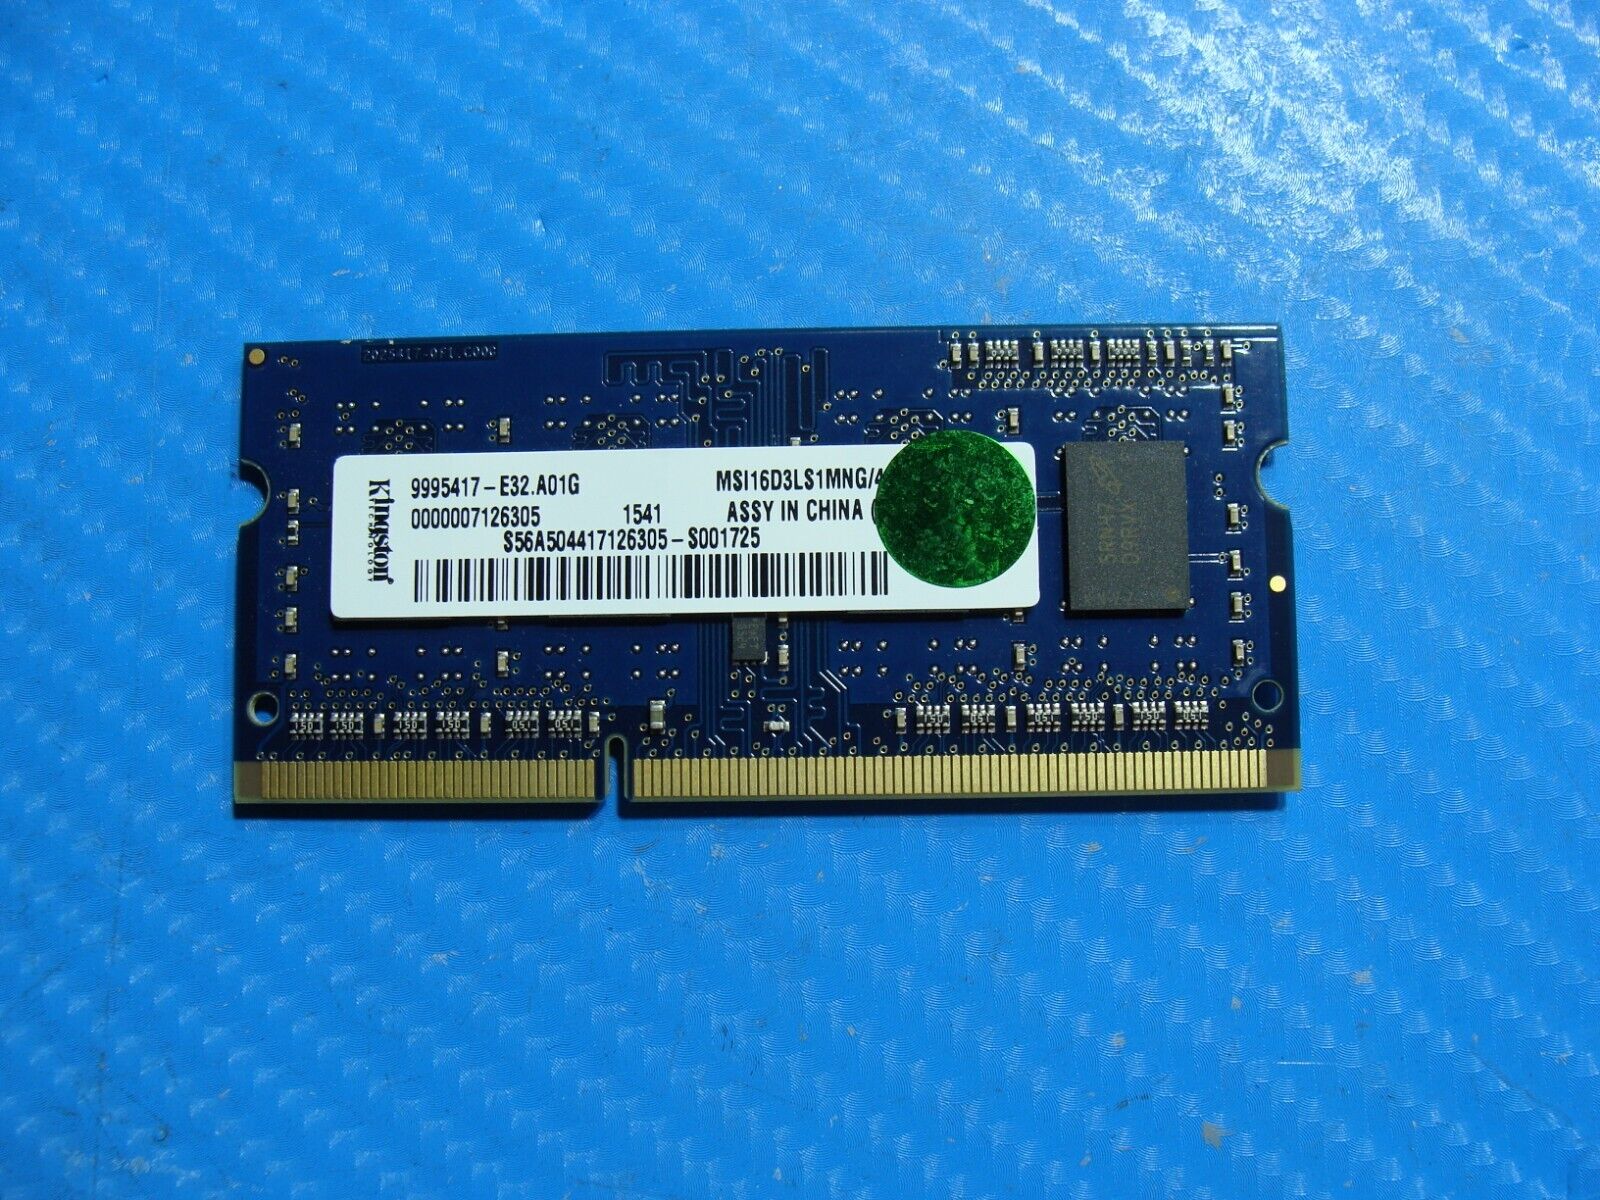 MSI GE62 2QD So-Dimm Kingston 4GB Memory Ram MSI16D3LS1MNG/4G